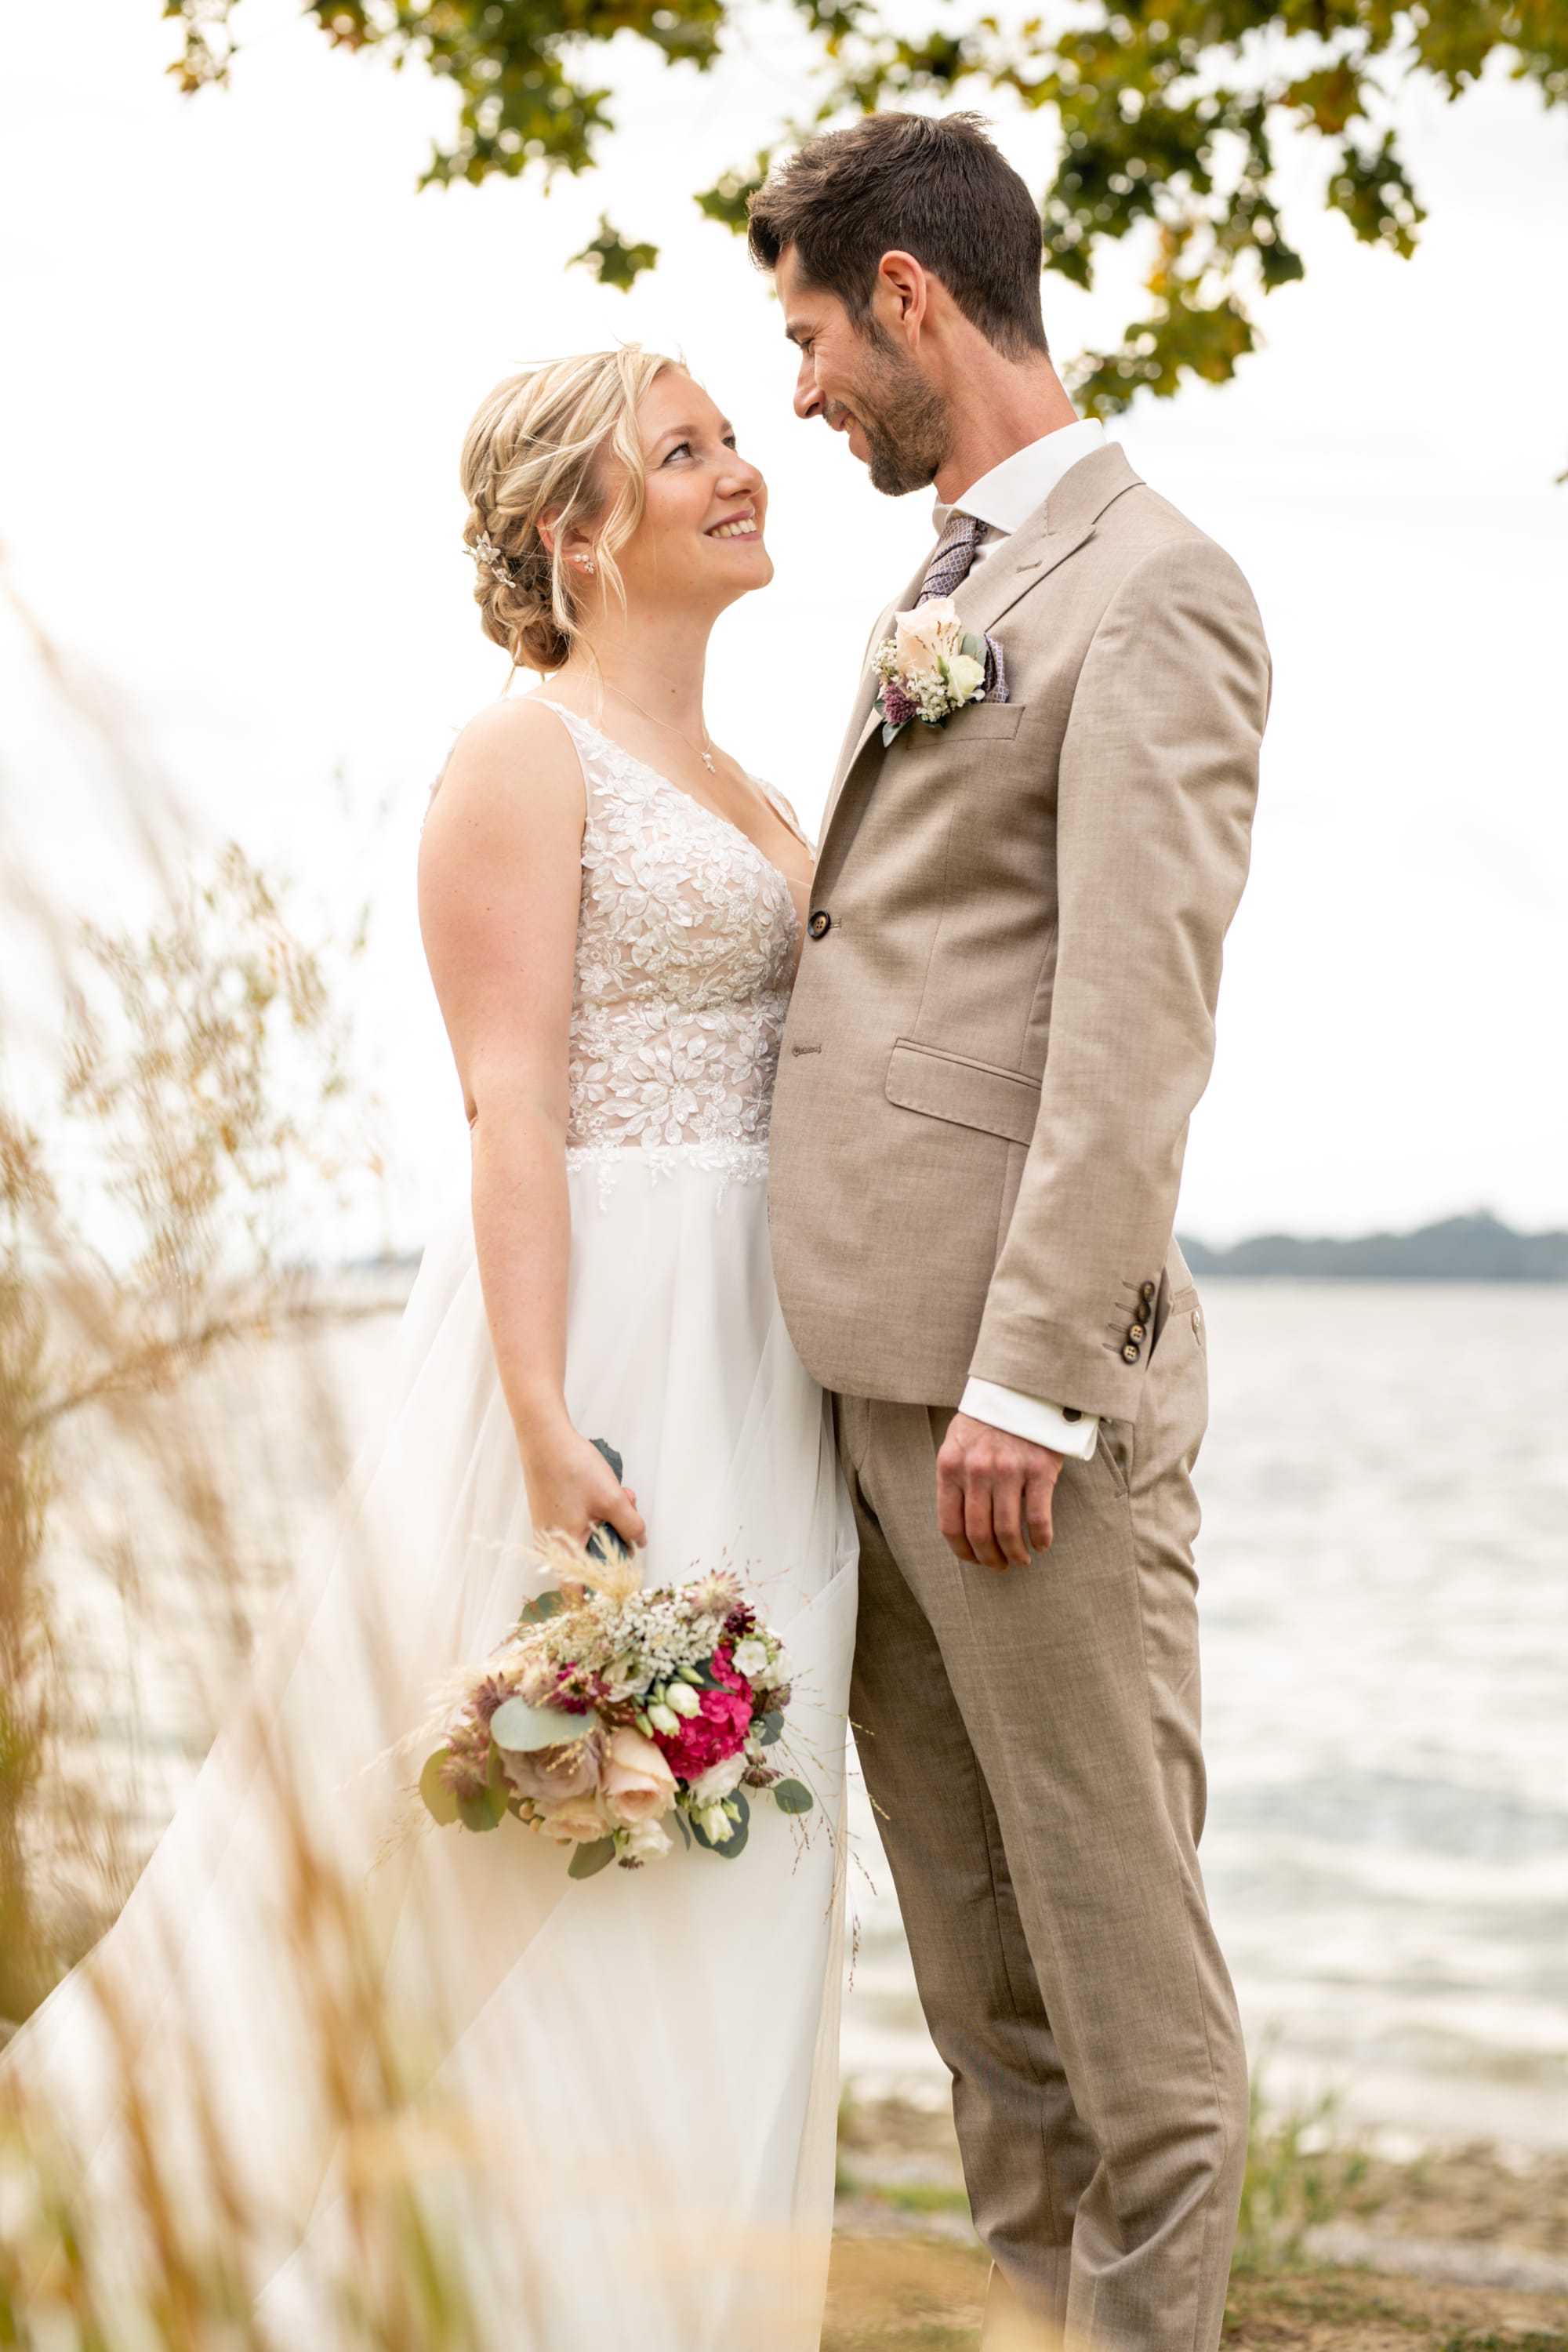 Lotte und Nicky - eine stürmische Bodensee-Hochzeit